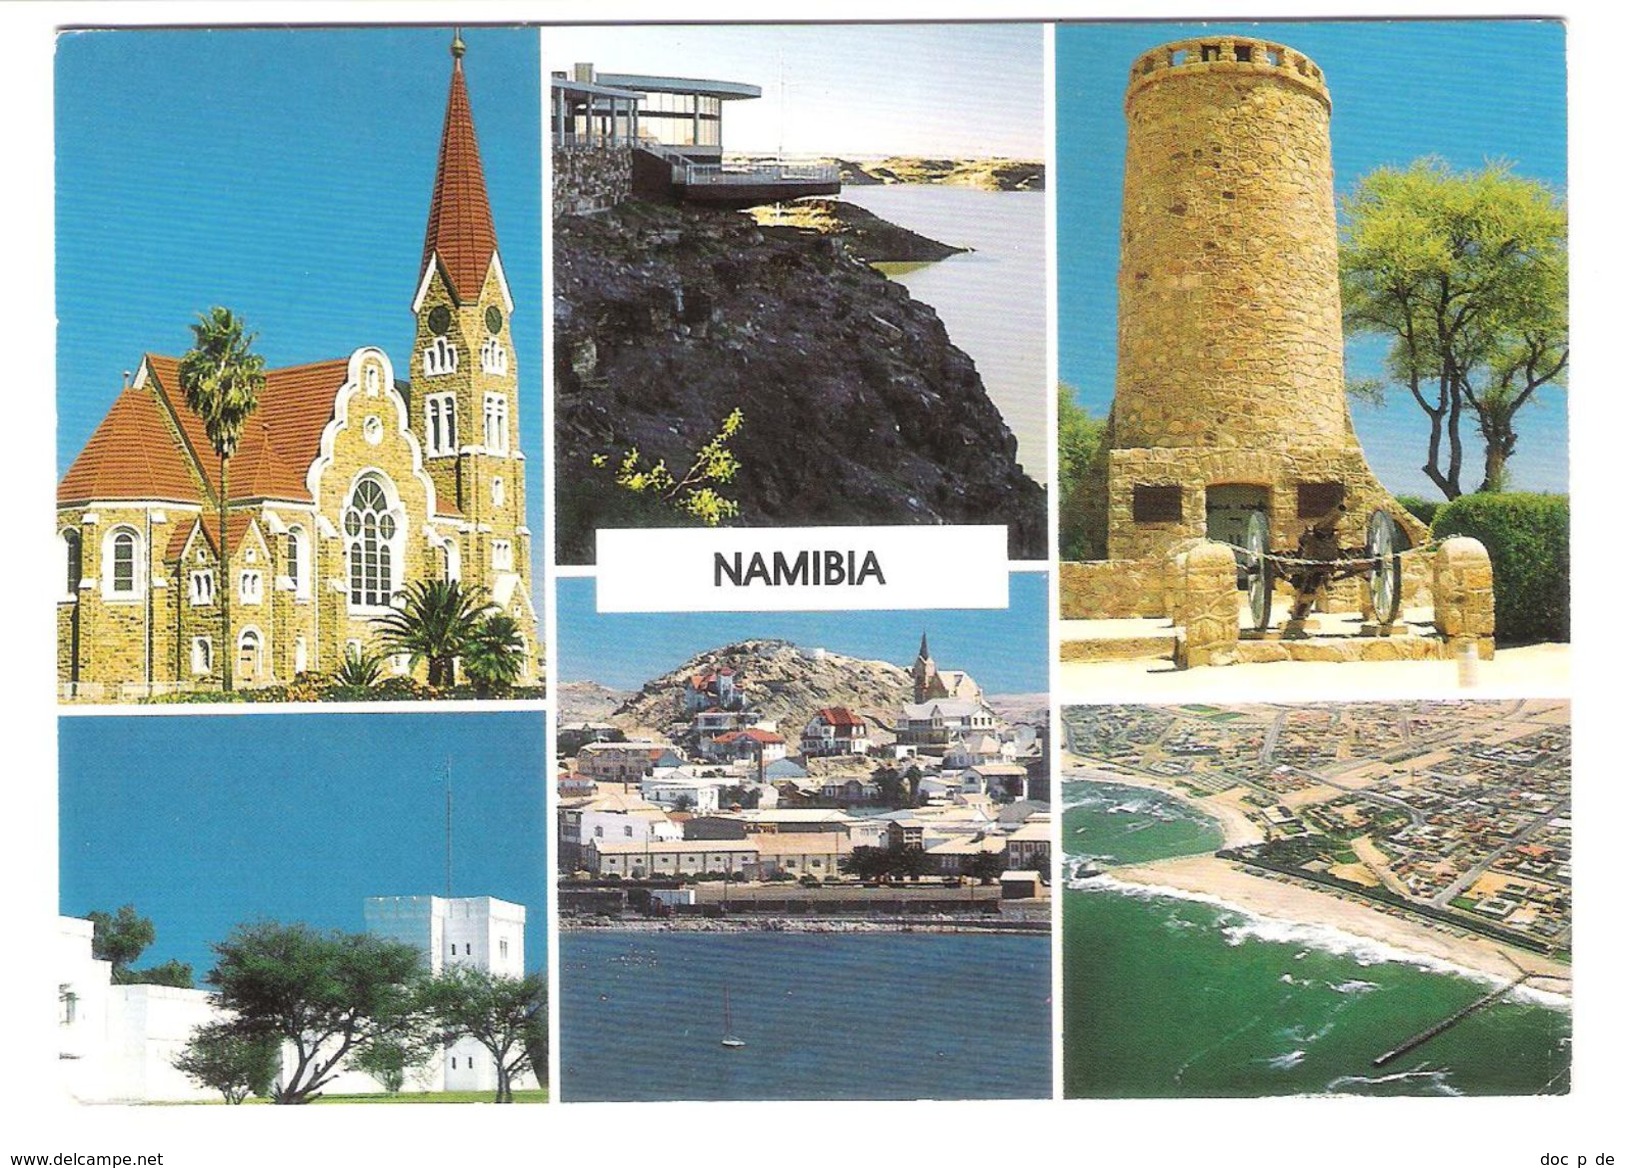 Namibia - Views - German Lutheran Church - Namibia